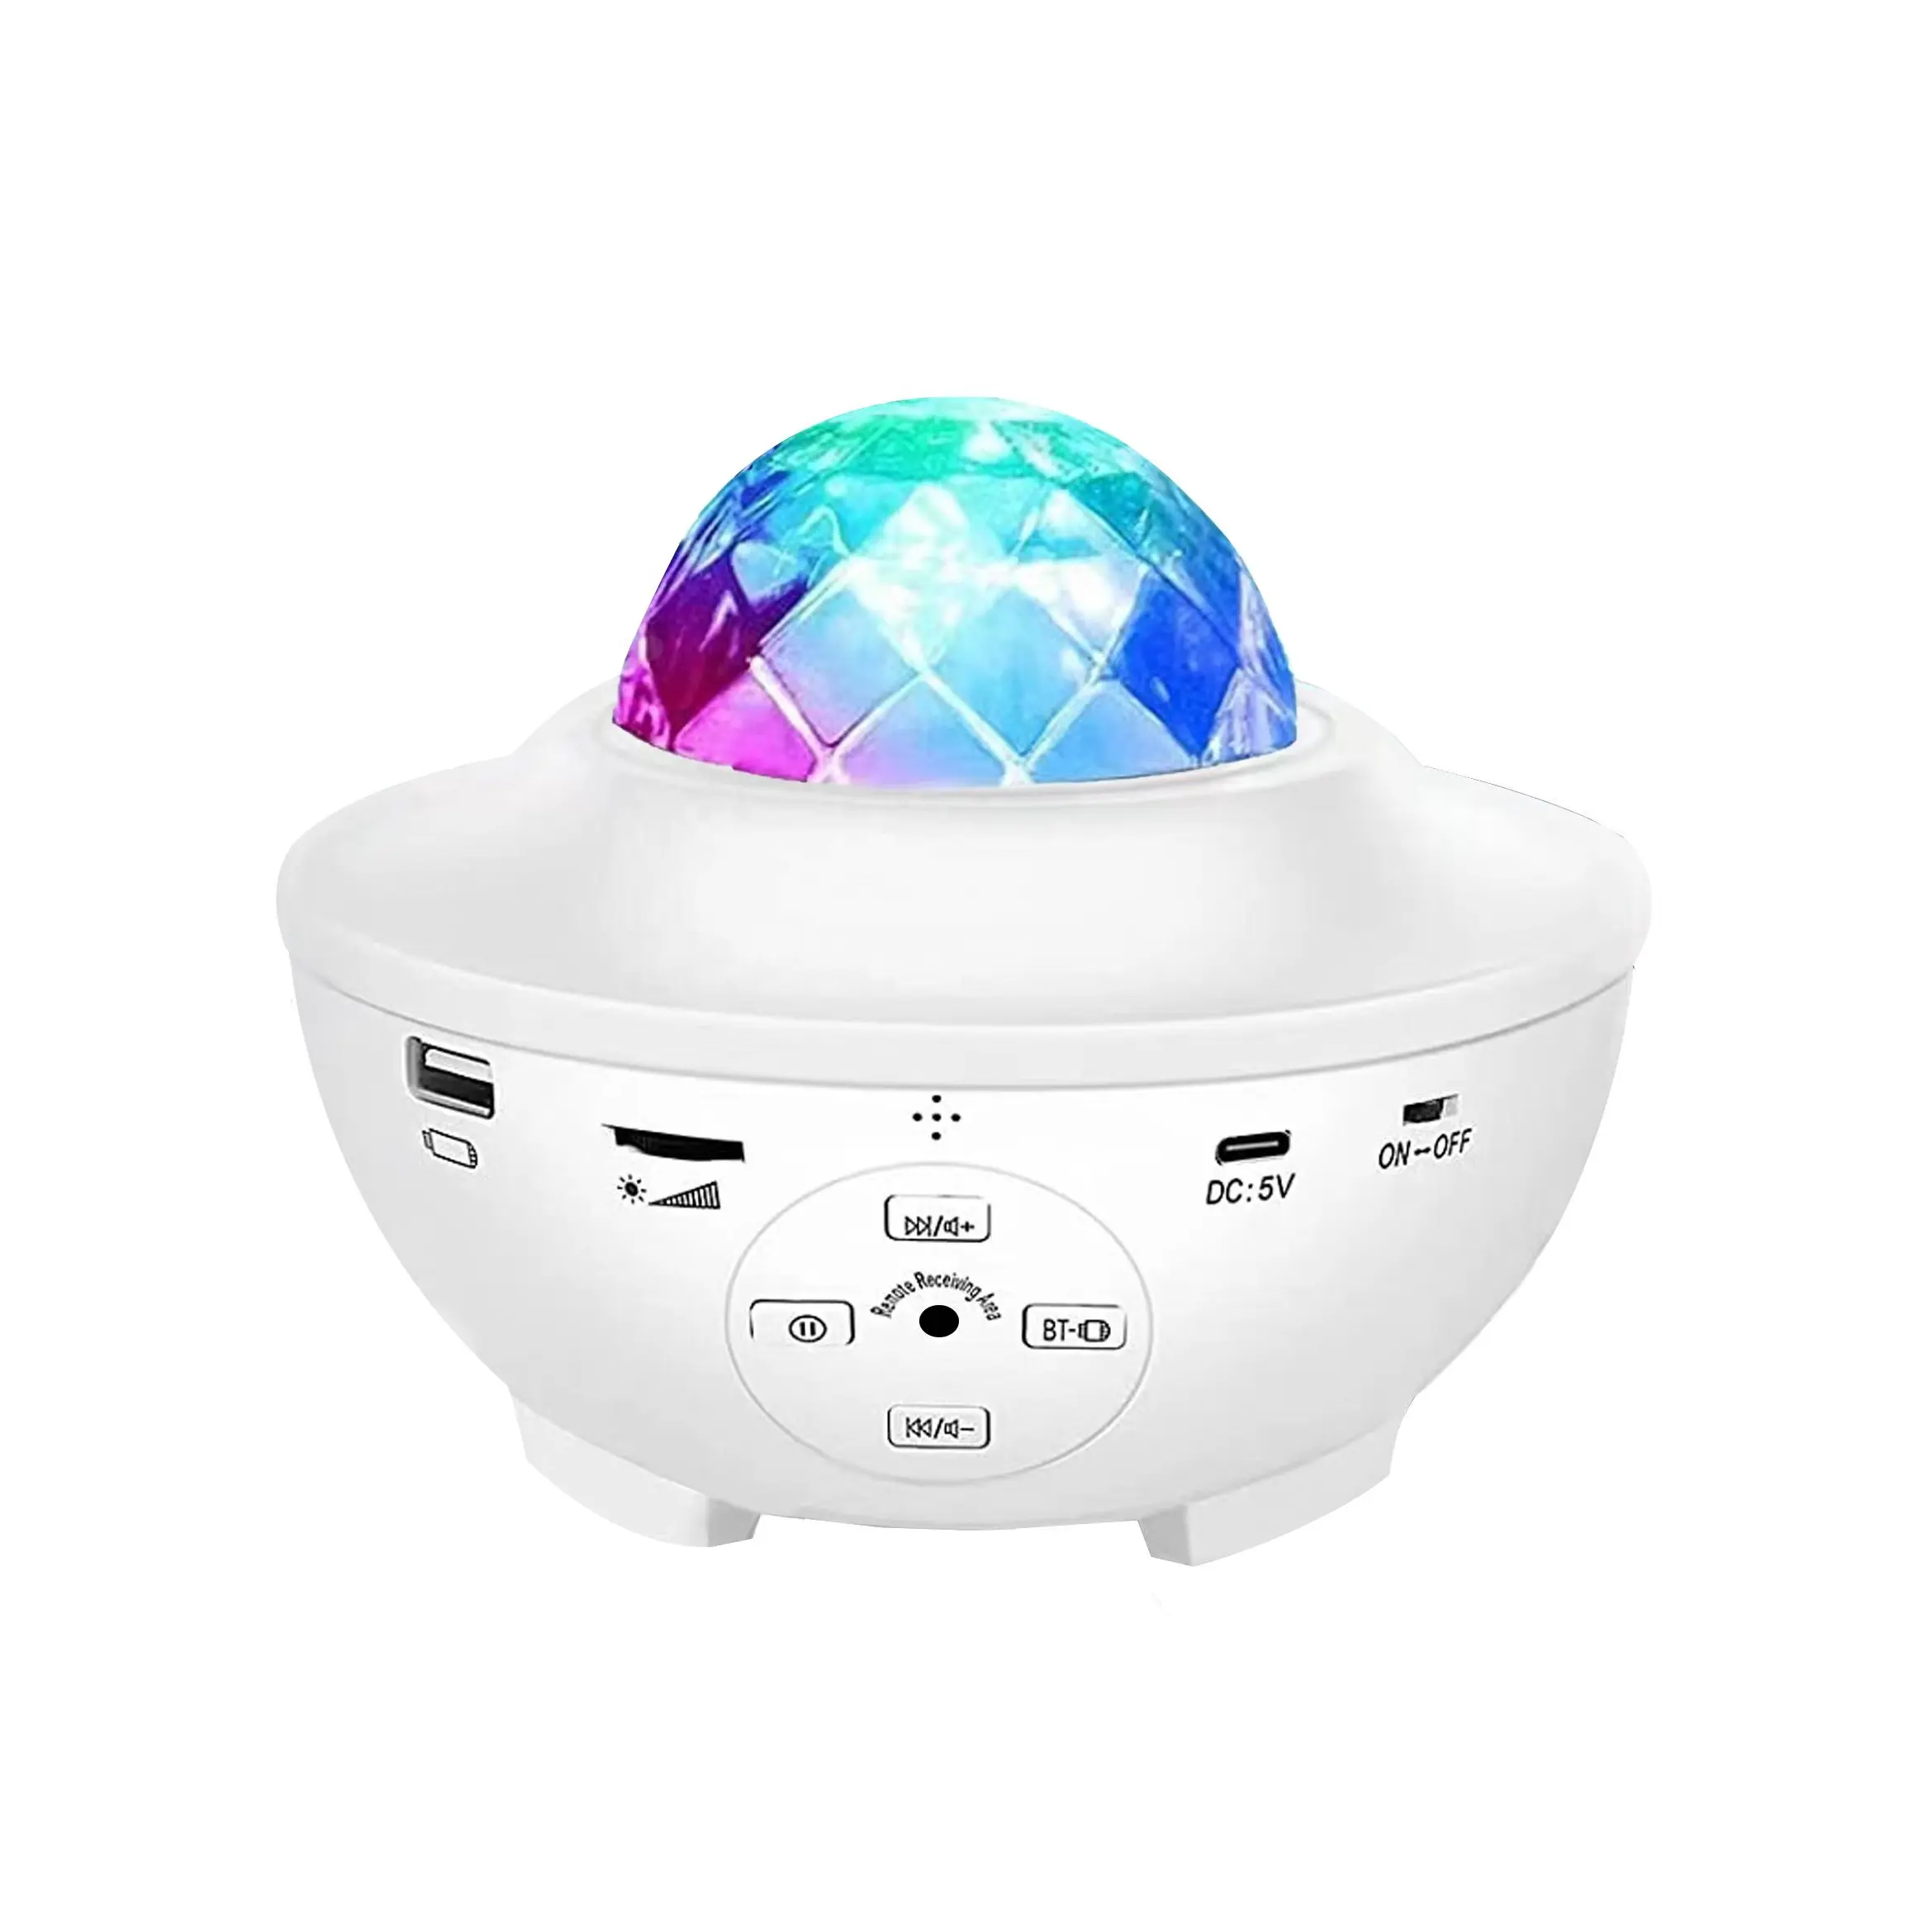 Lampu proyektor bintang malam, proyektor gelombang Nebula bintang bulan dengan Speaker musik Bluetooth warna RGB berubah Remote